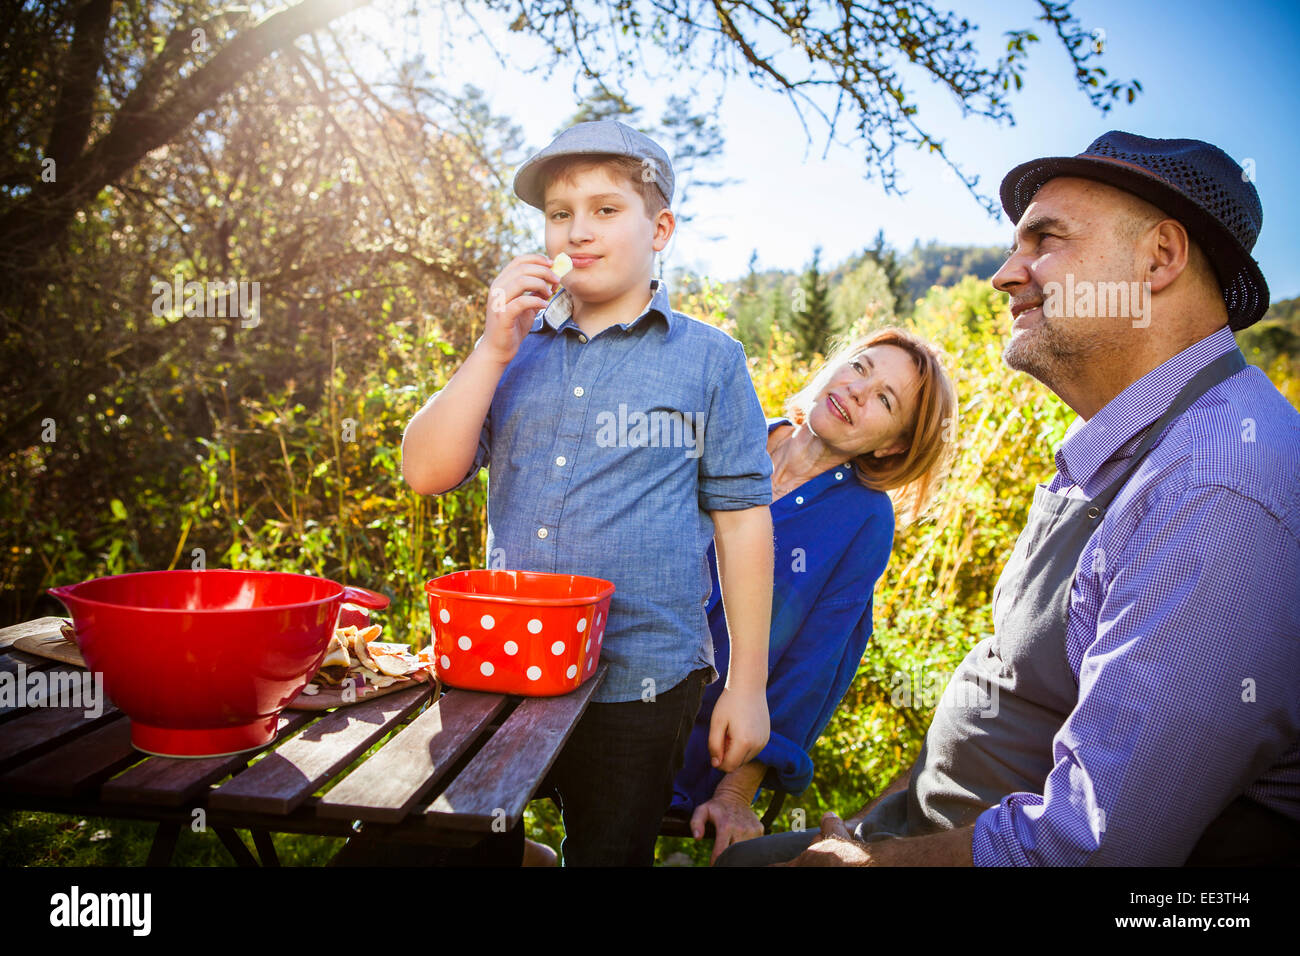 Junge, einen Apfel essen, im Garten, München, Bayern, Deutschland Stockfoto